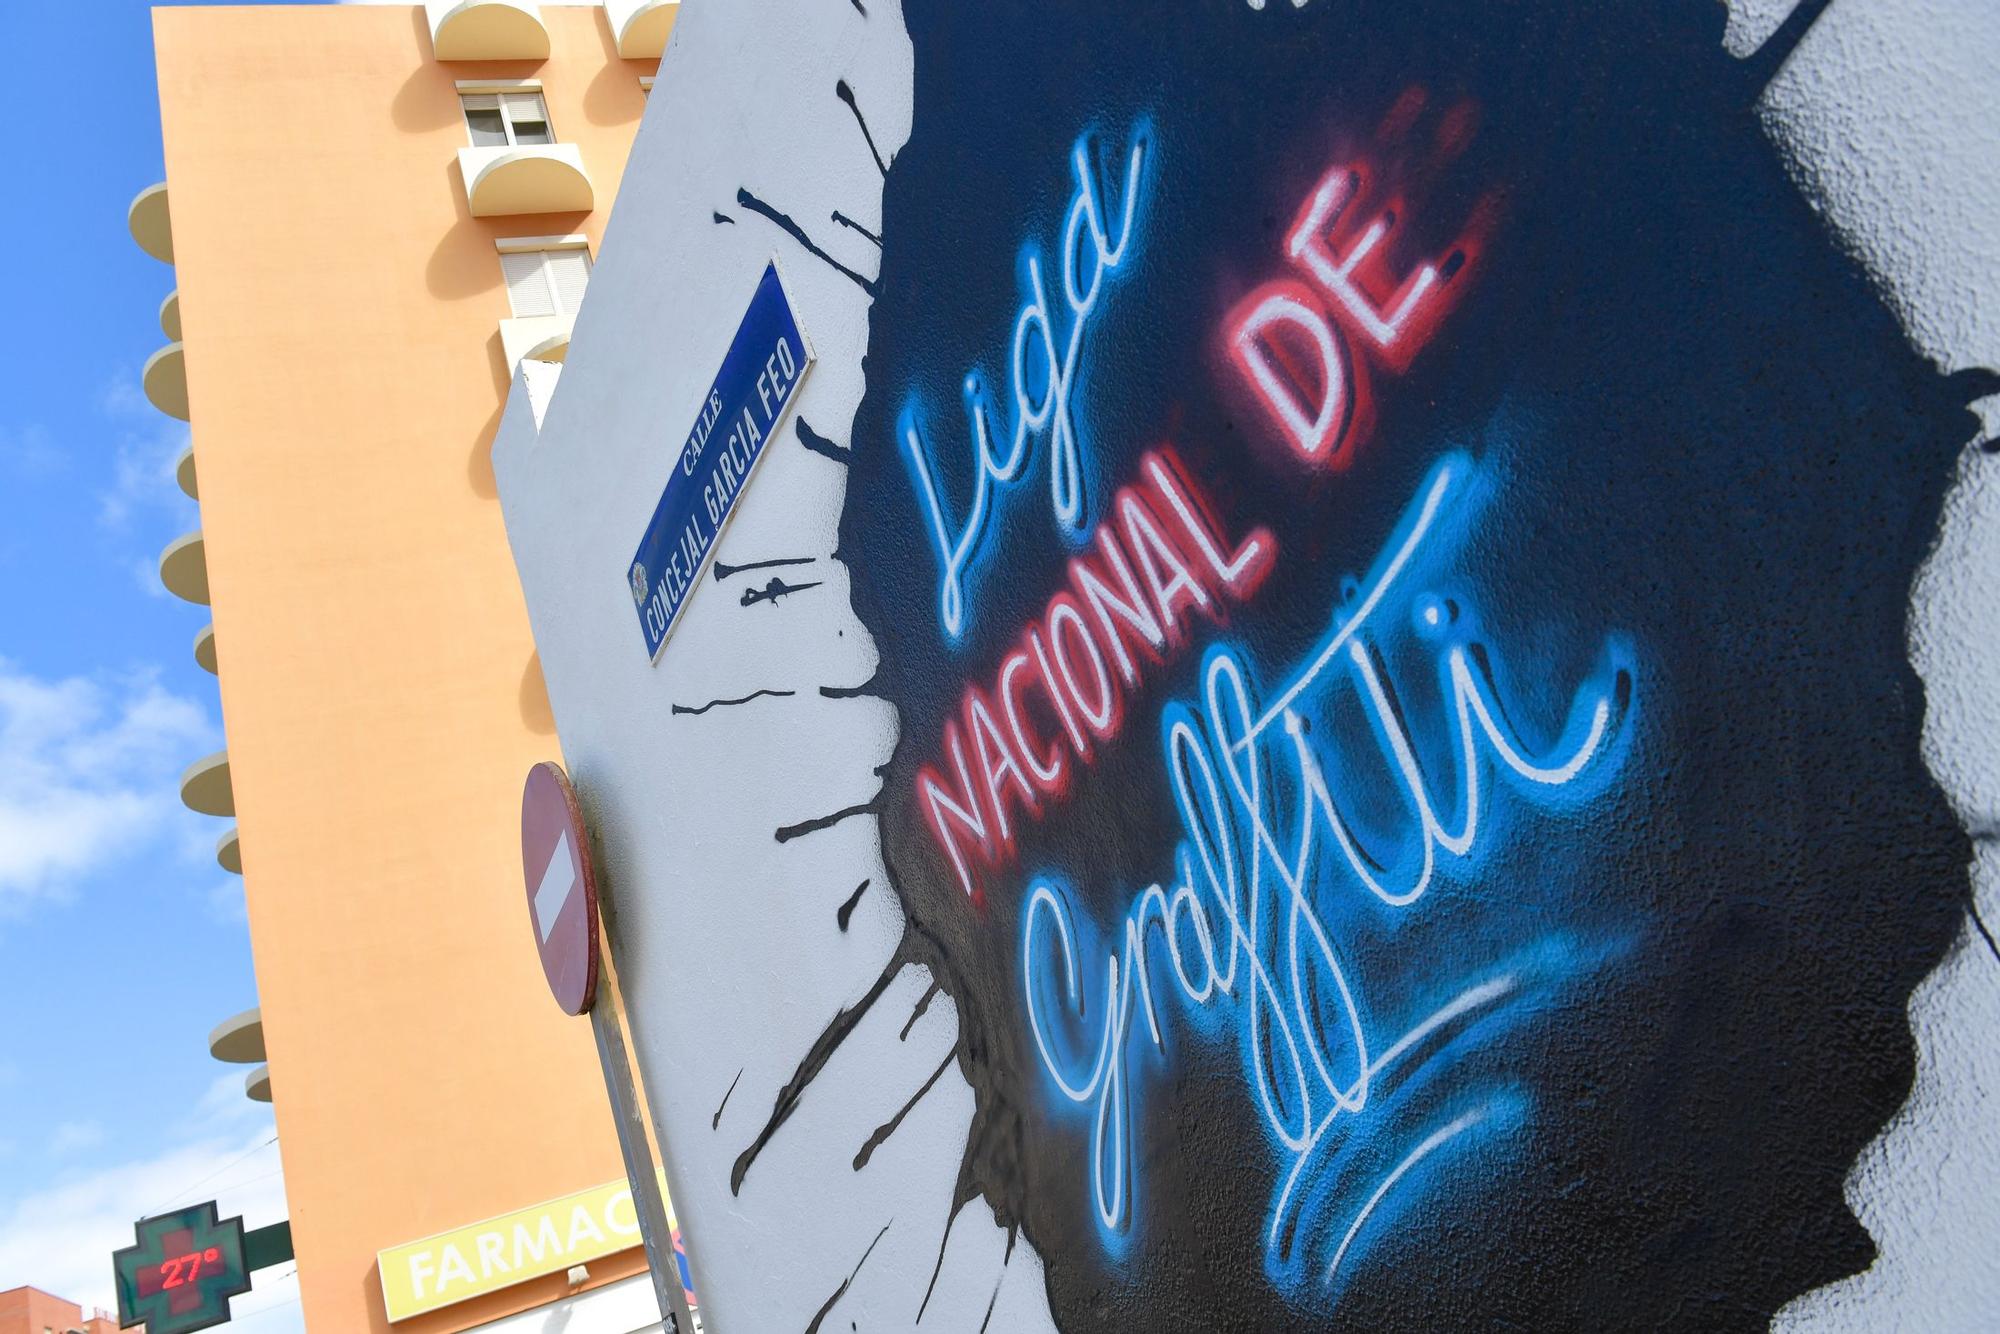 Liga nacional de graffitis en La Minilla